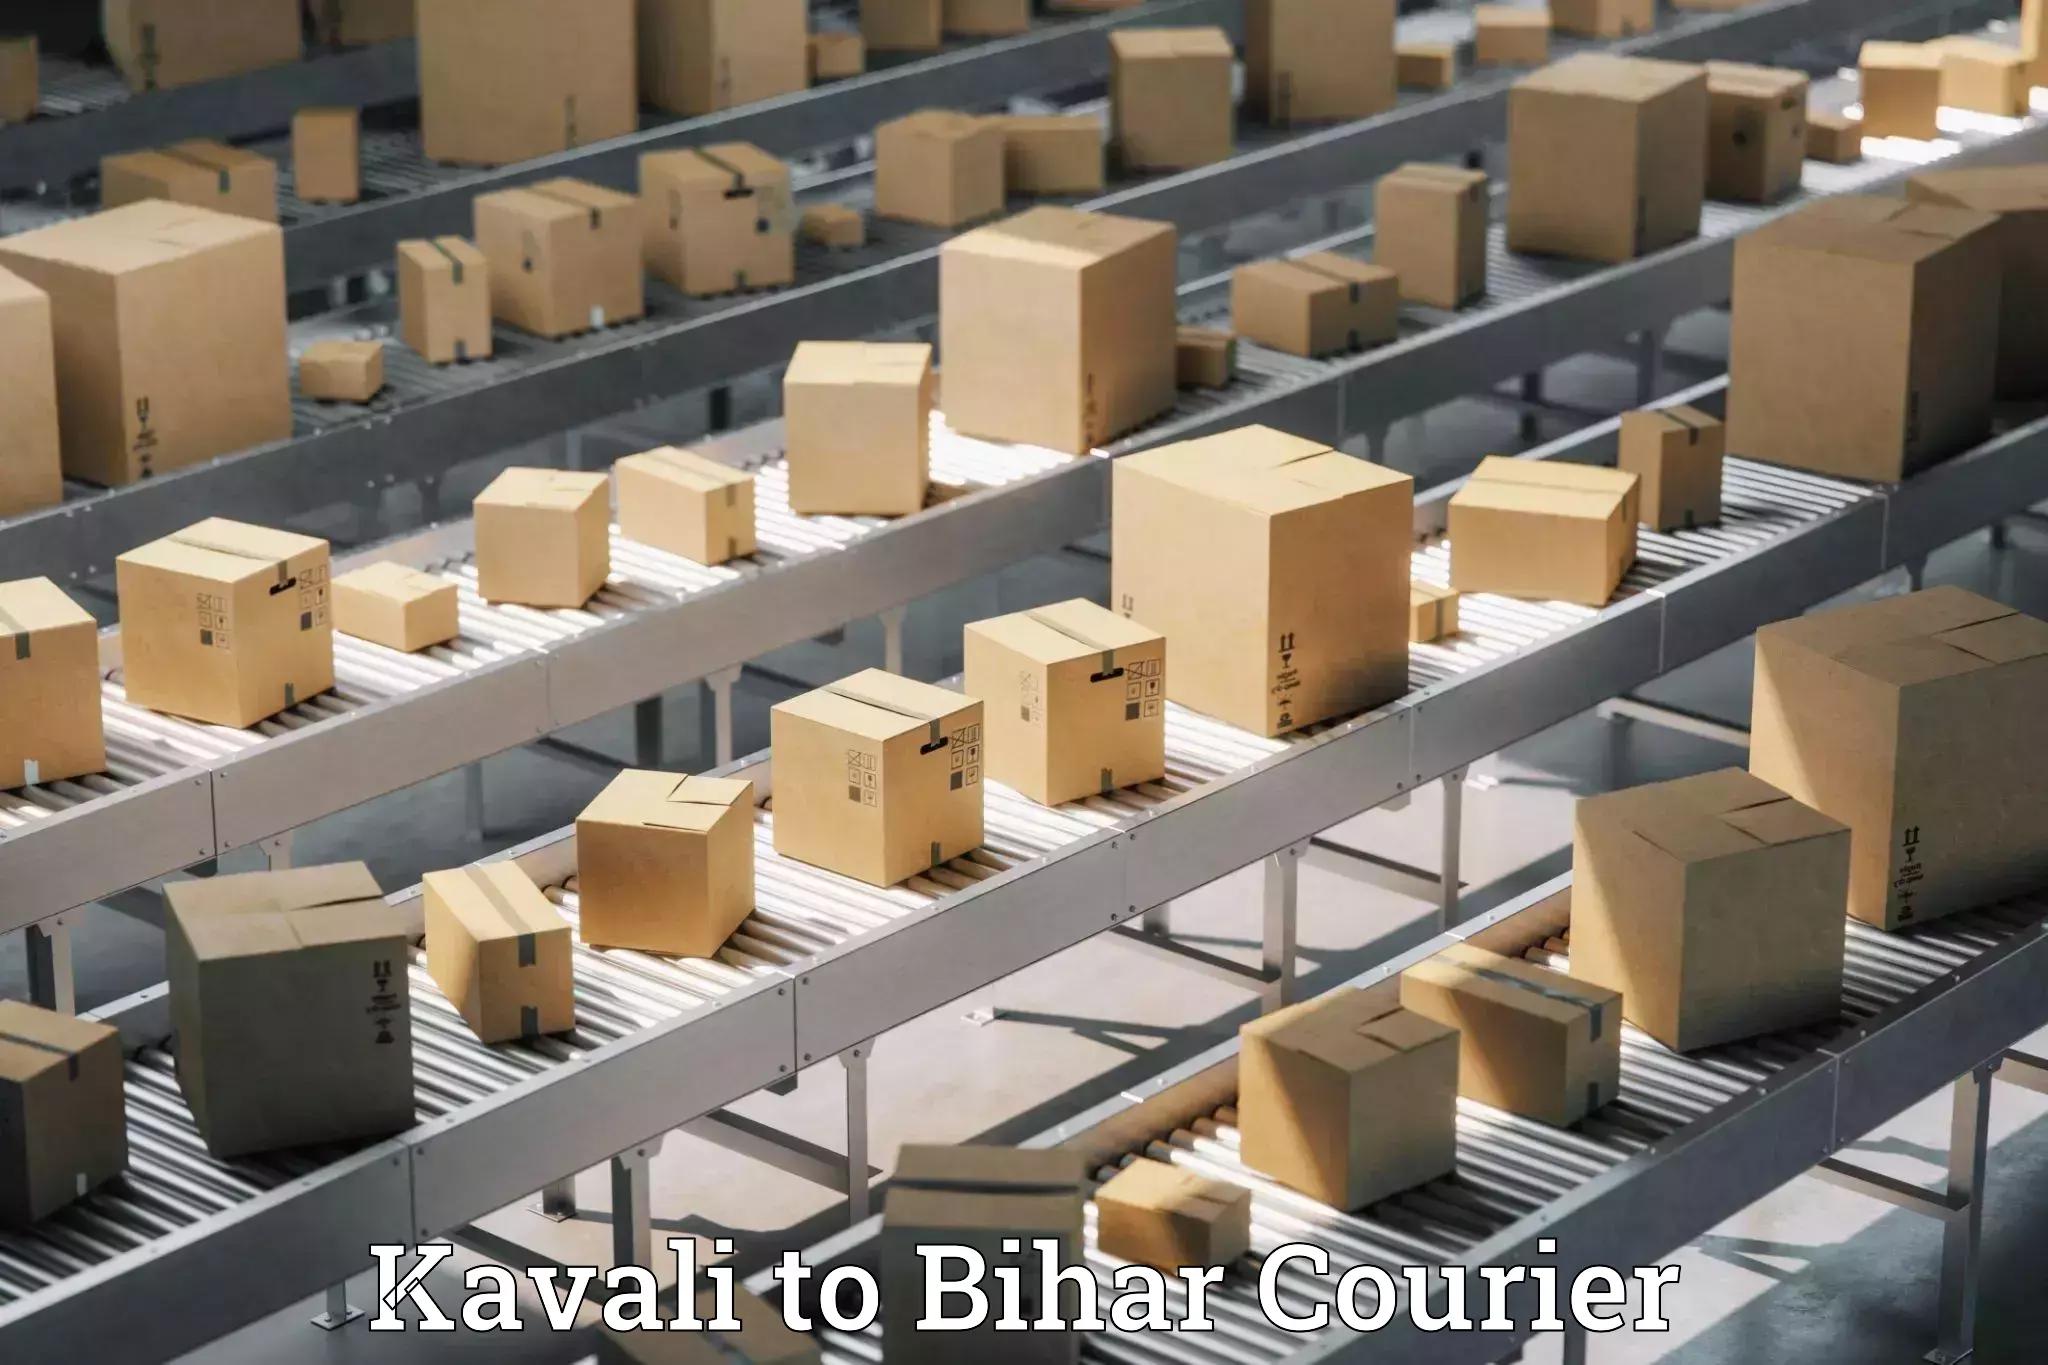 Courier service innovation Kavali to Saraiya